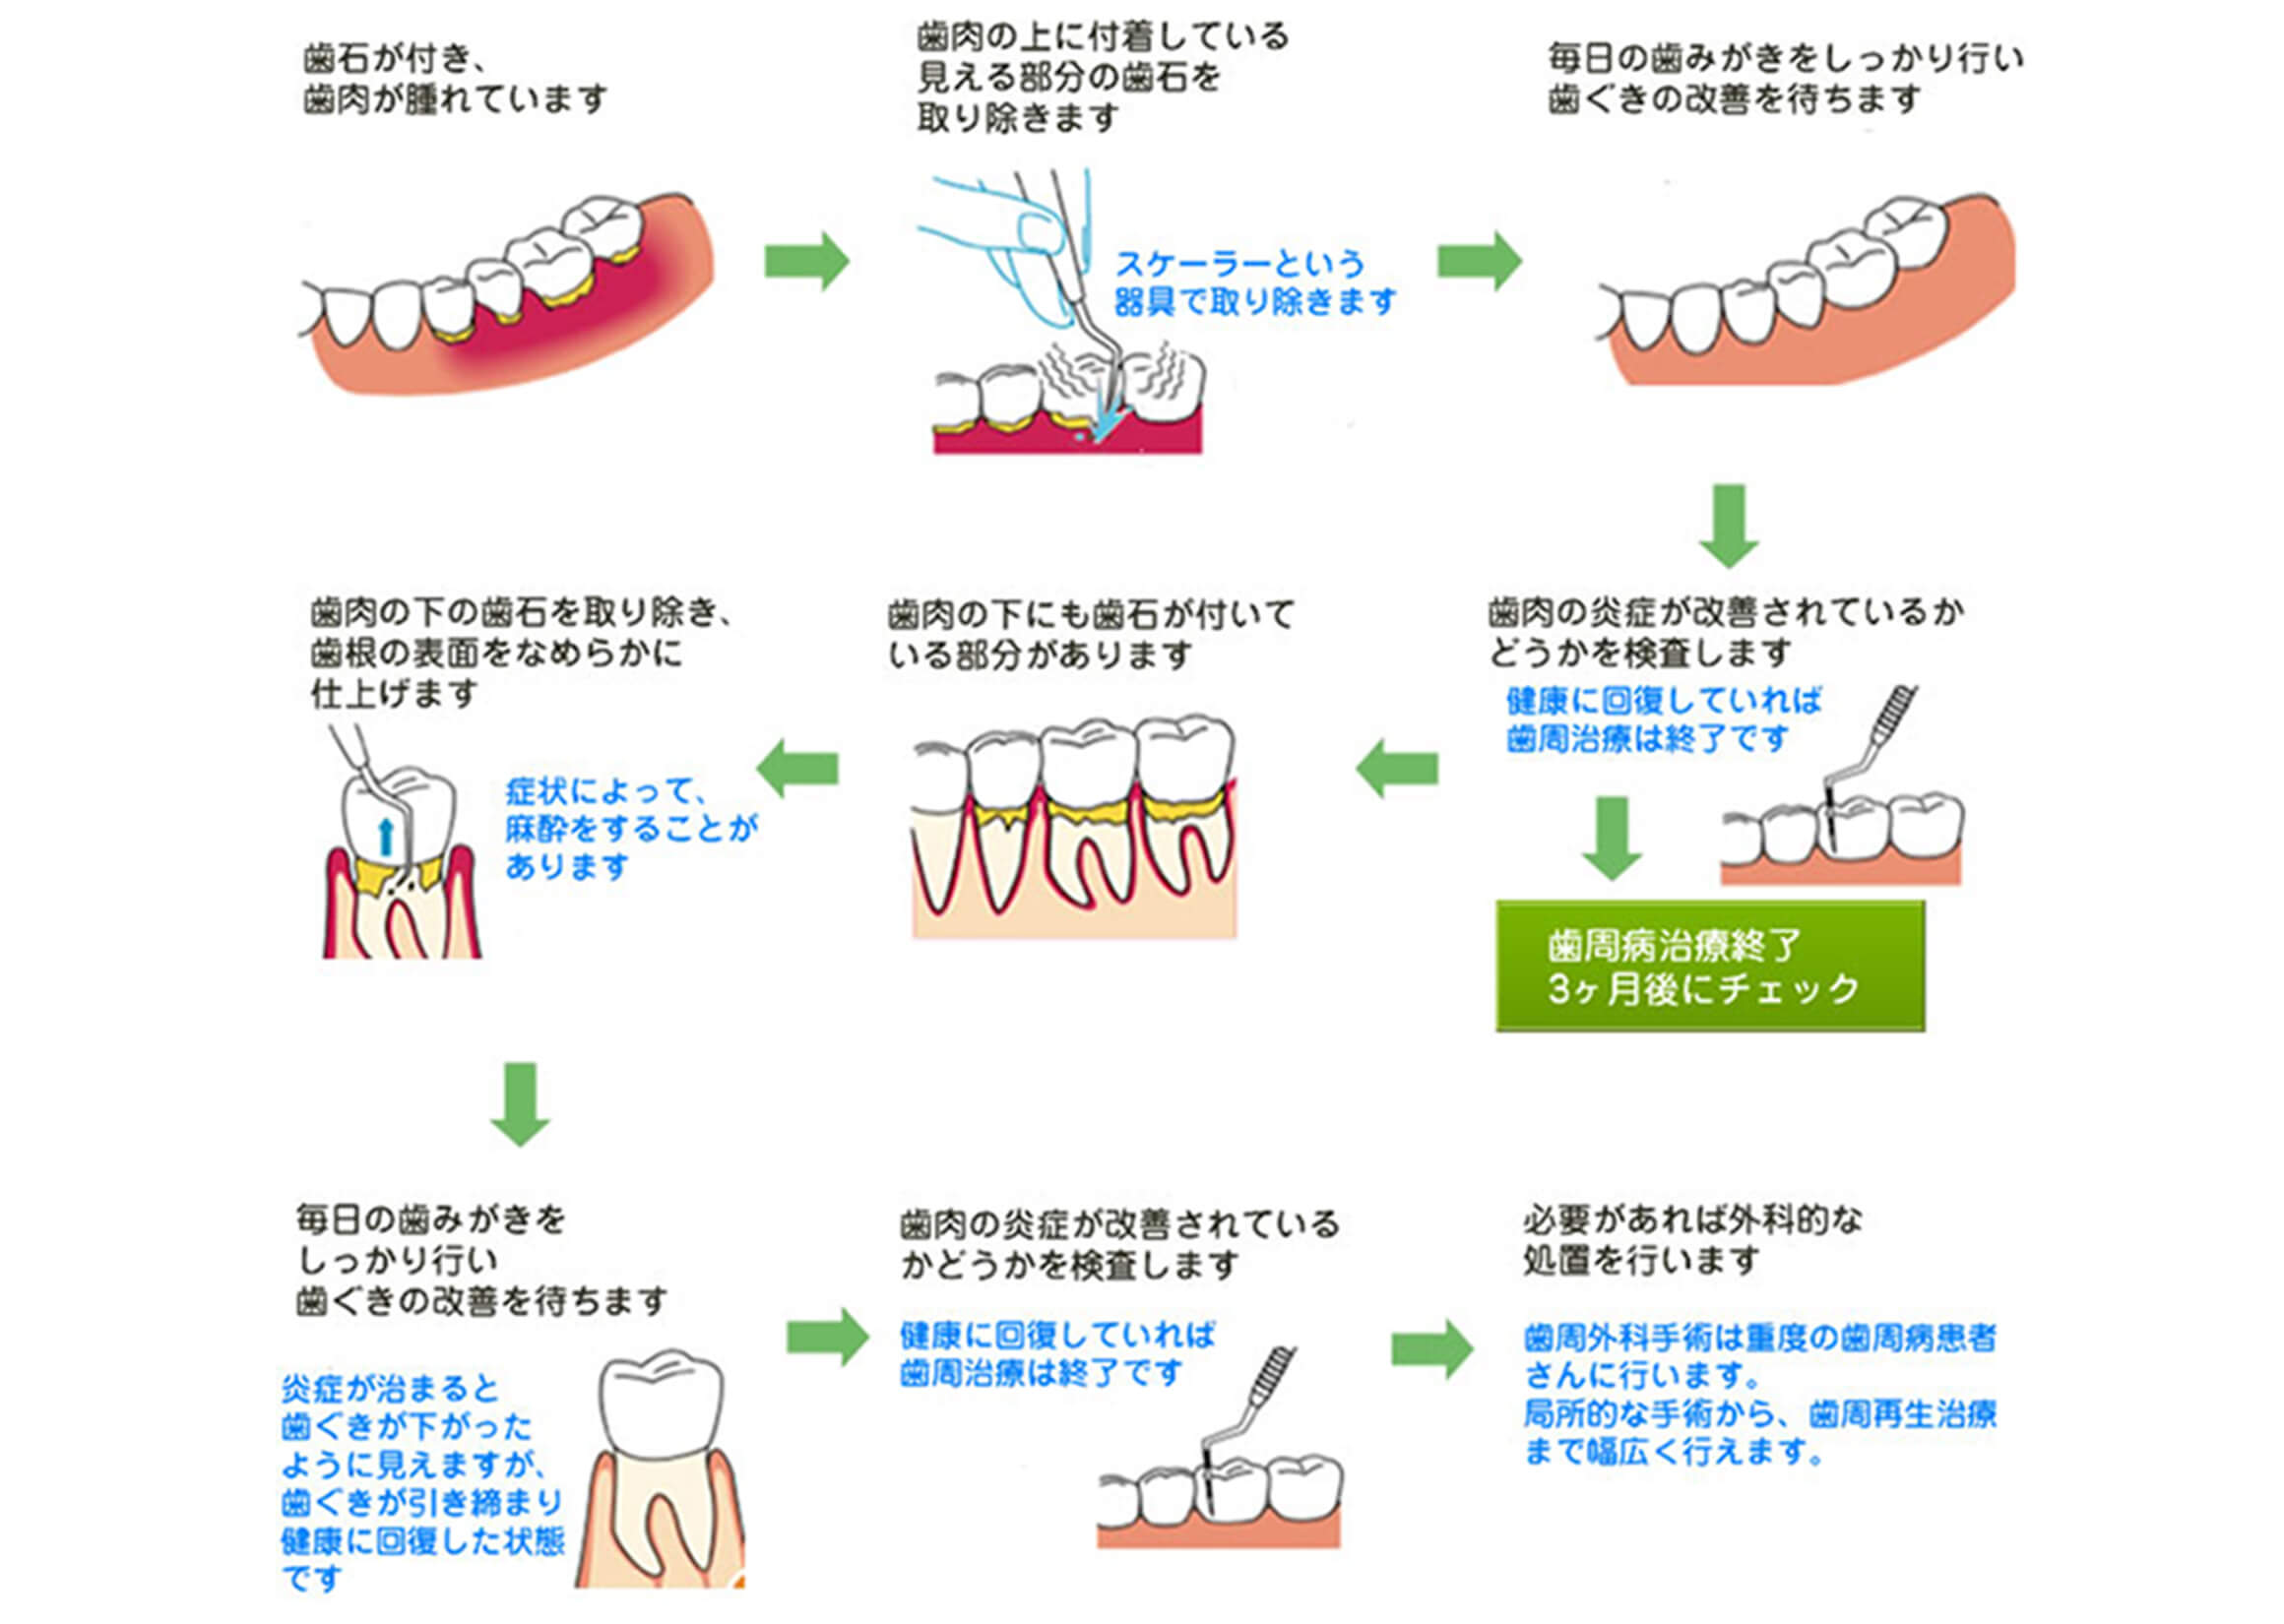 八田歯科での歯周病治療プログラム